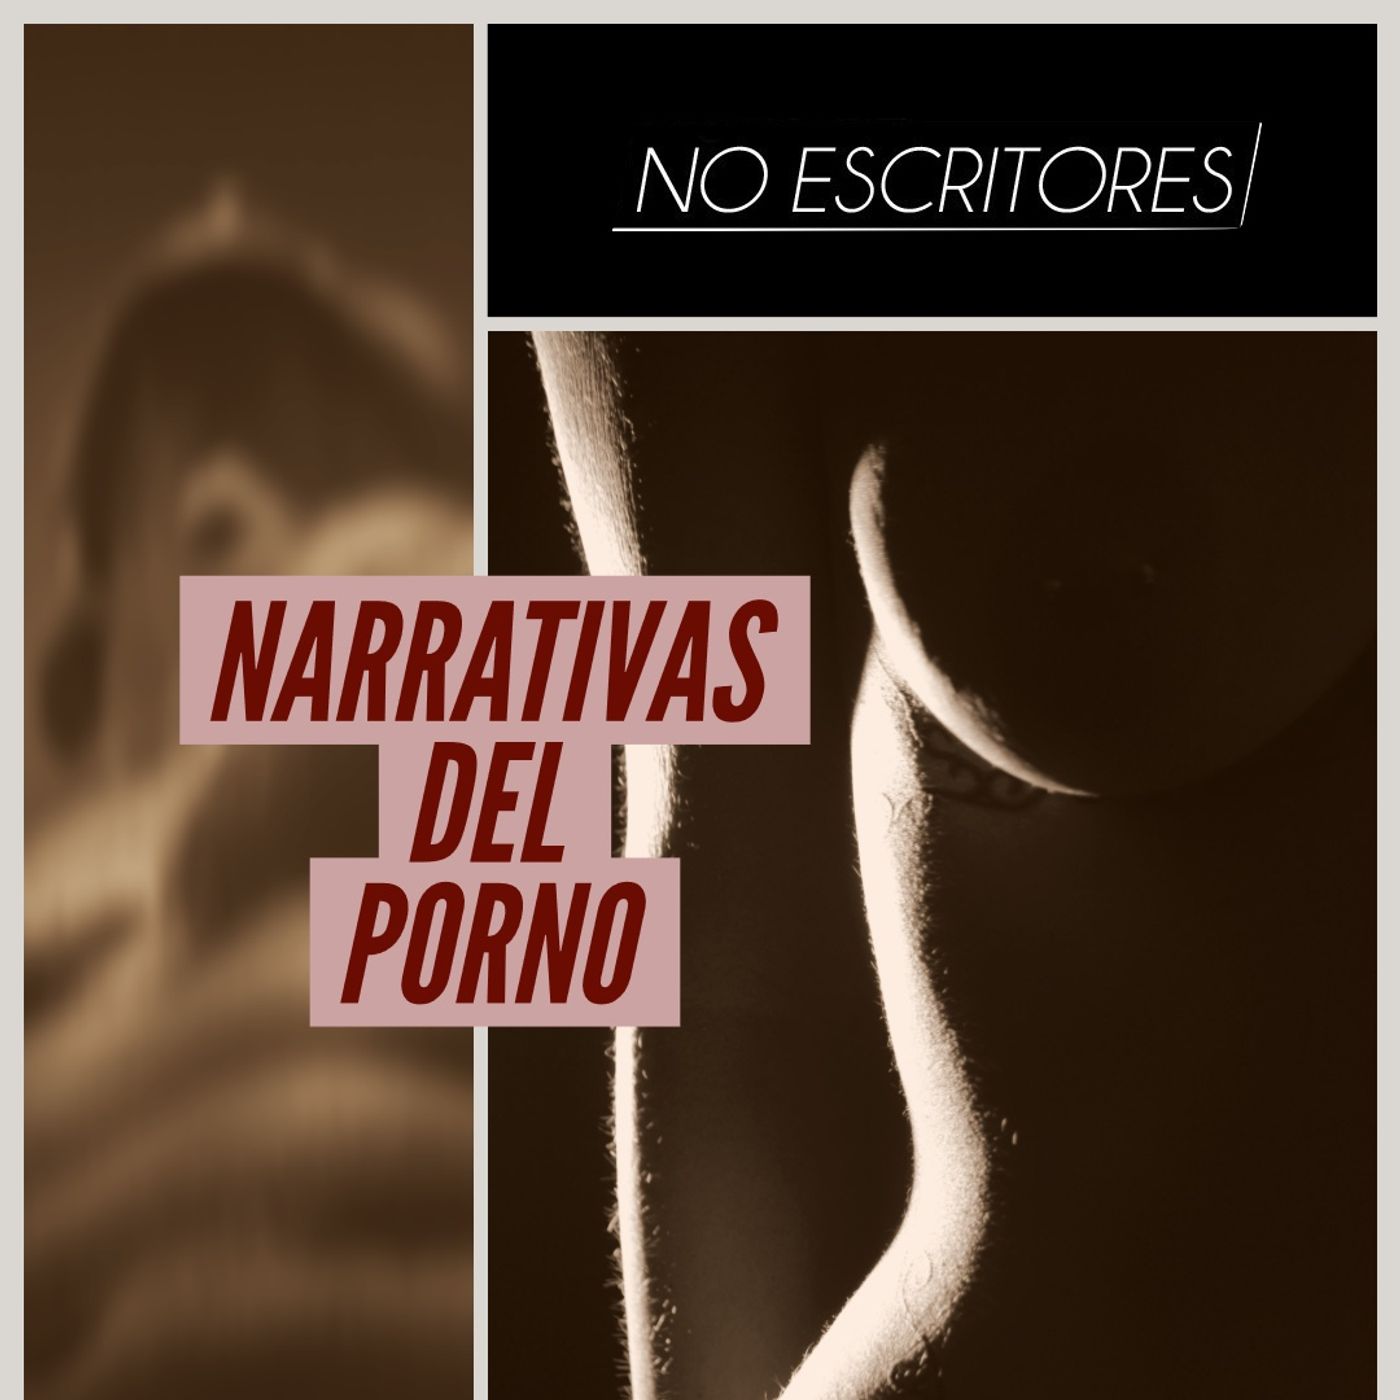 Los No Escritores conversan: Las narrativas del porno